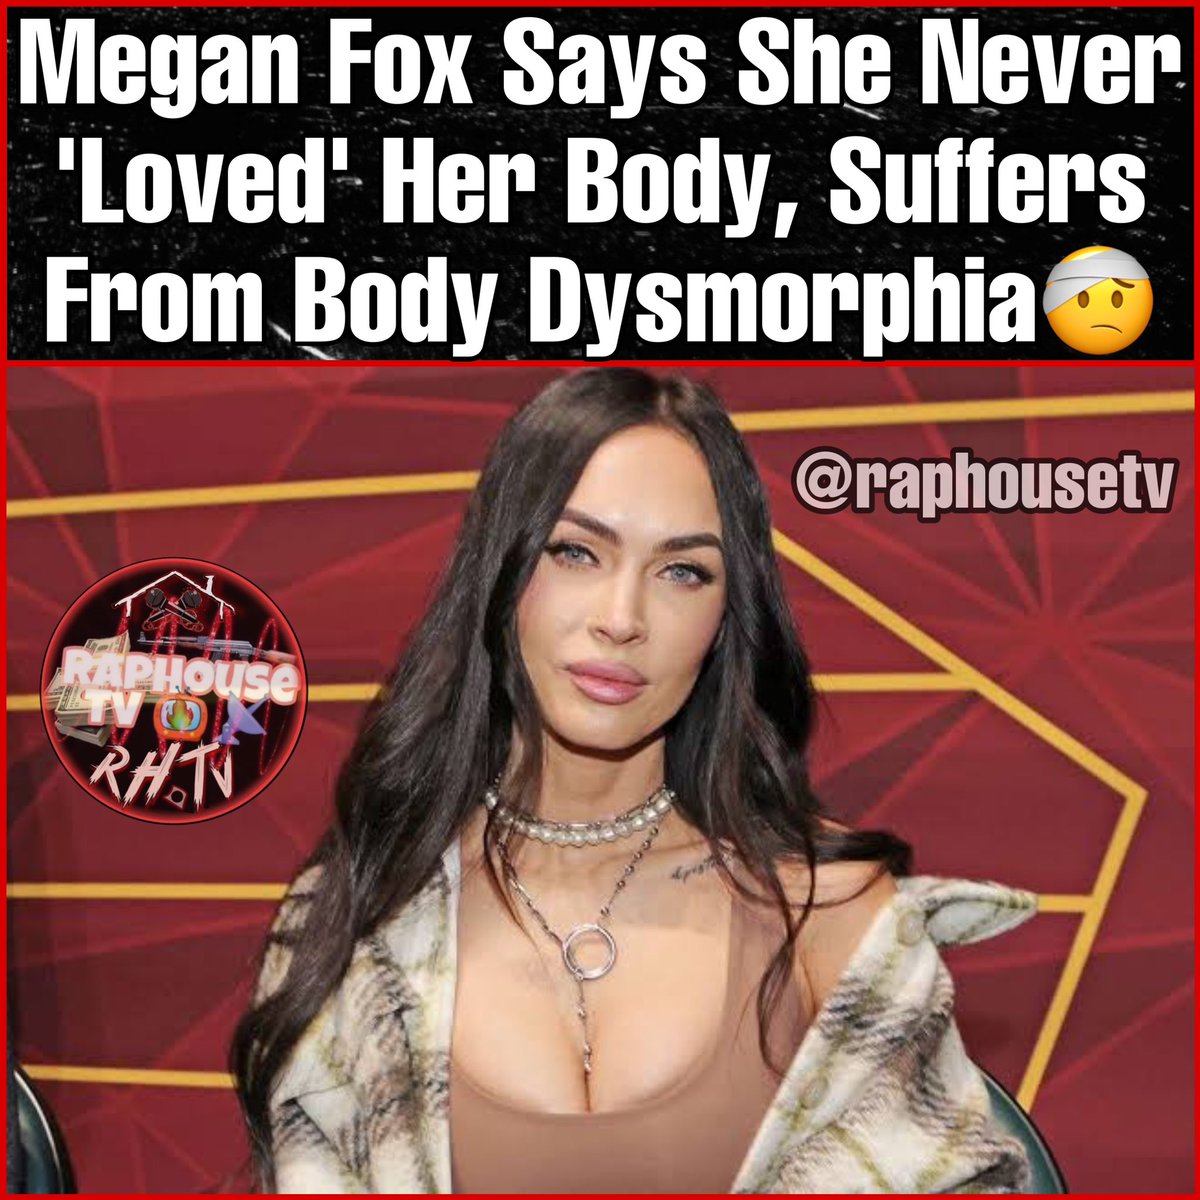 Raphousetv Rhtv On Twitter Megan Fox Says She Never Loved Her 